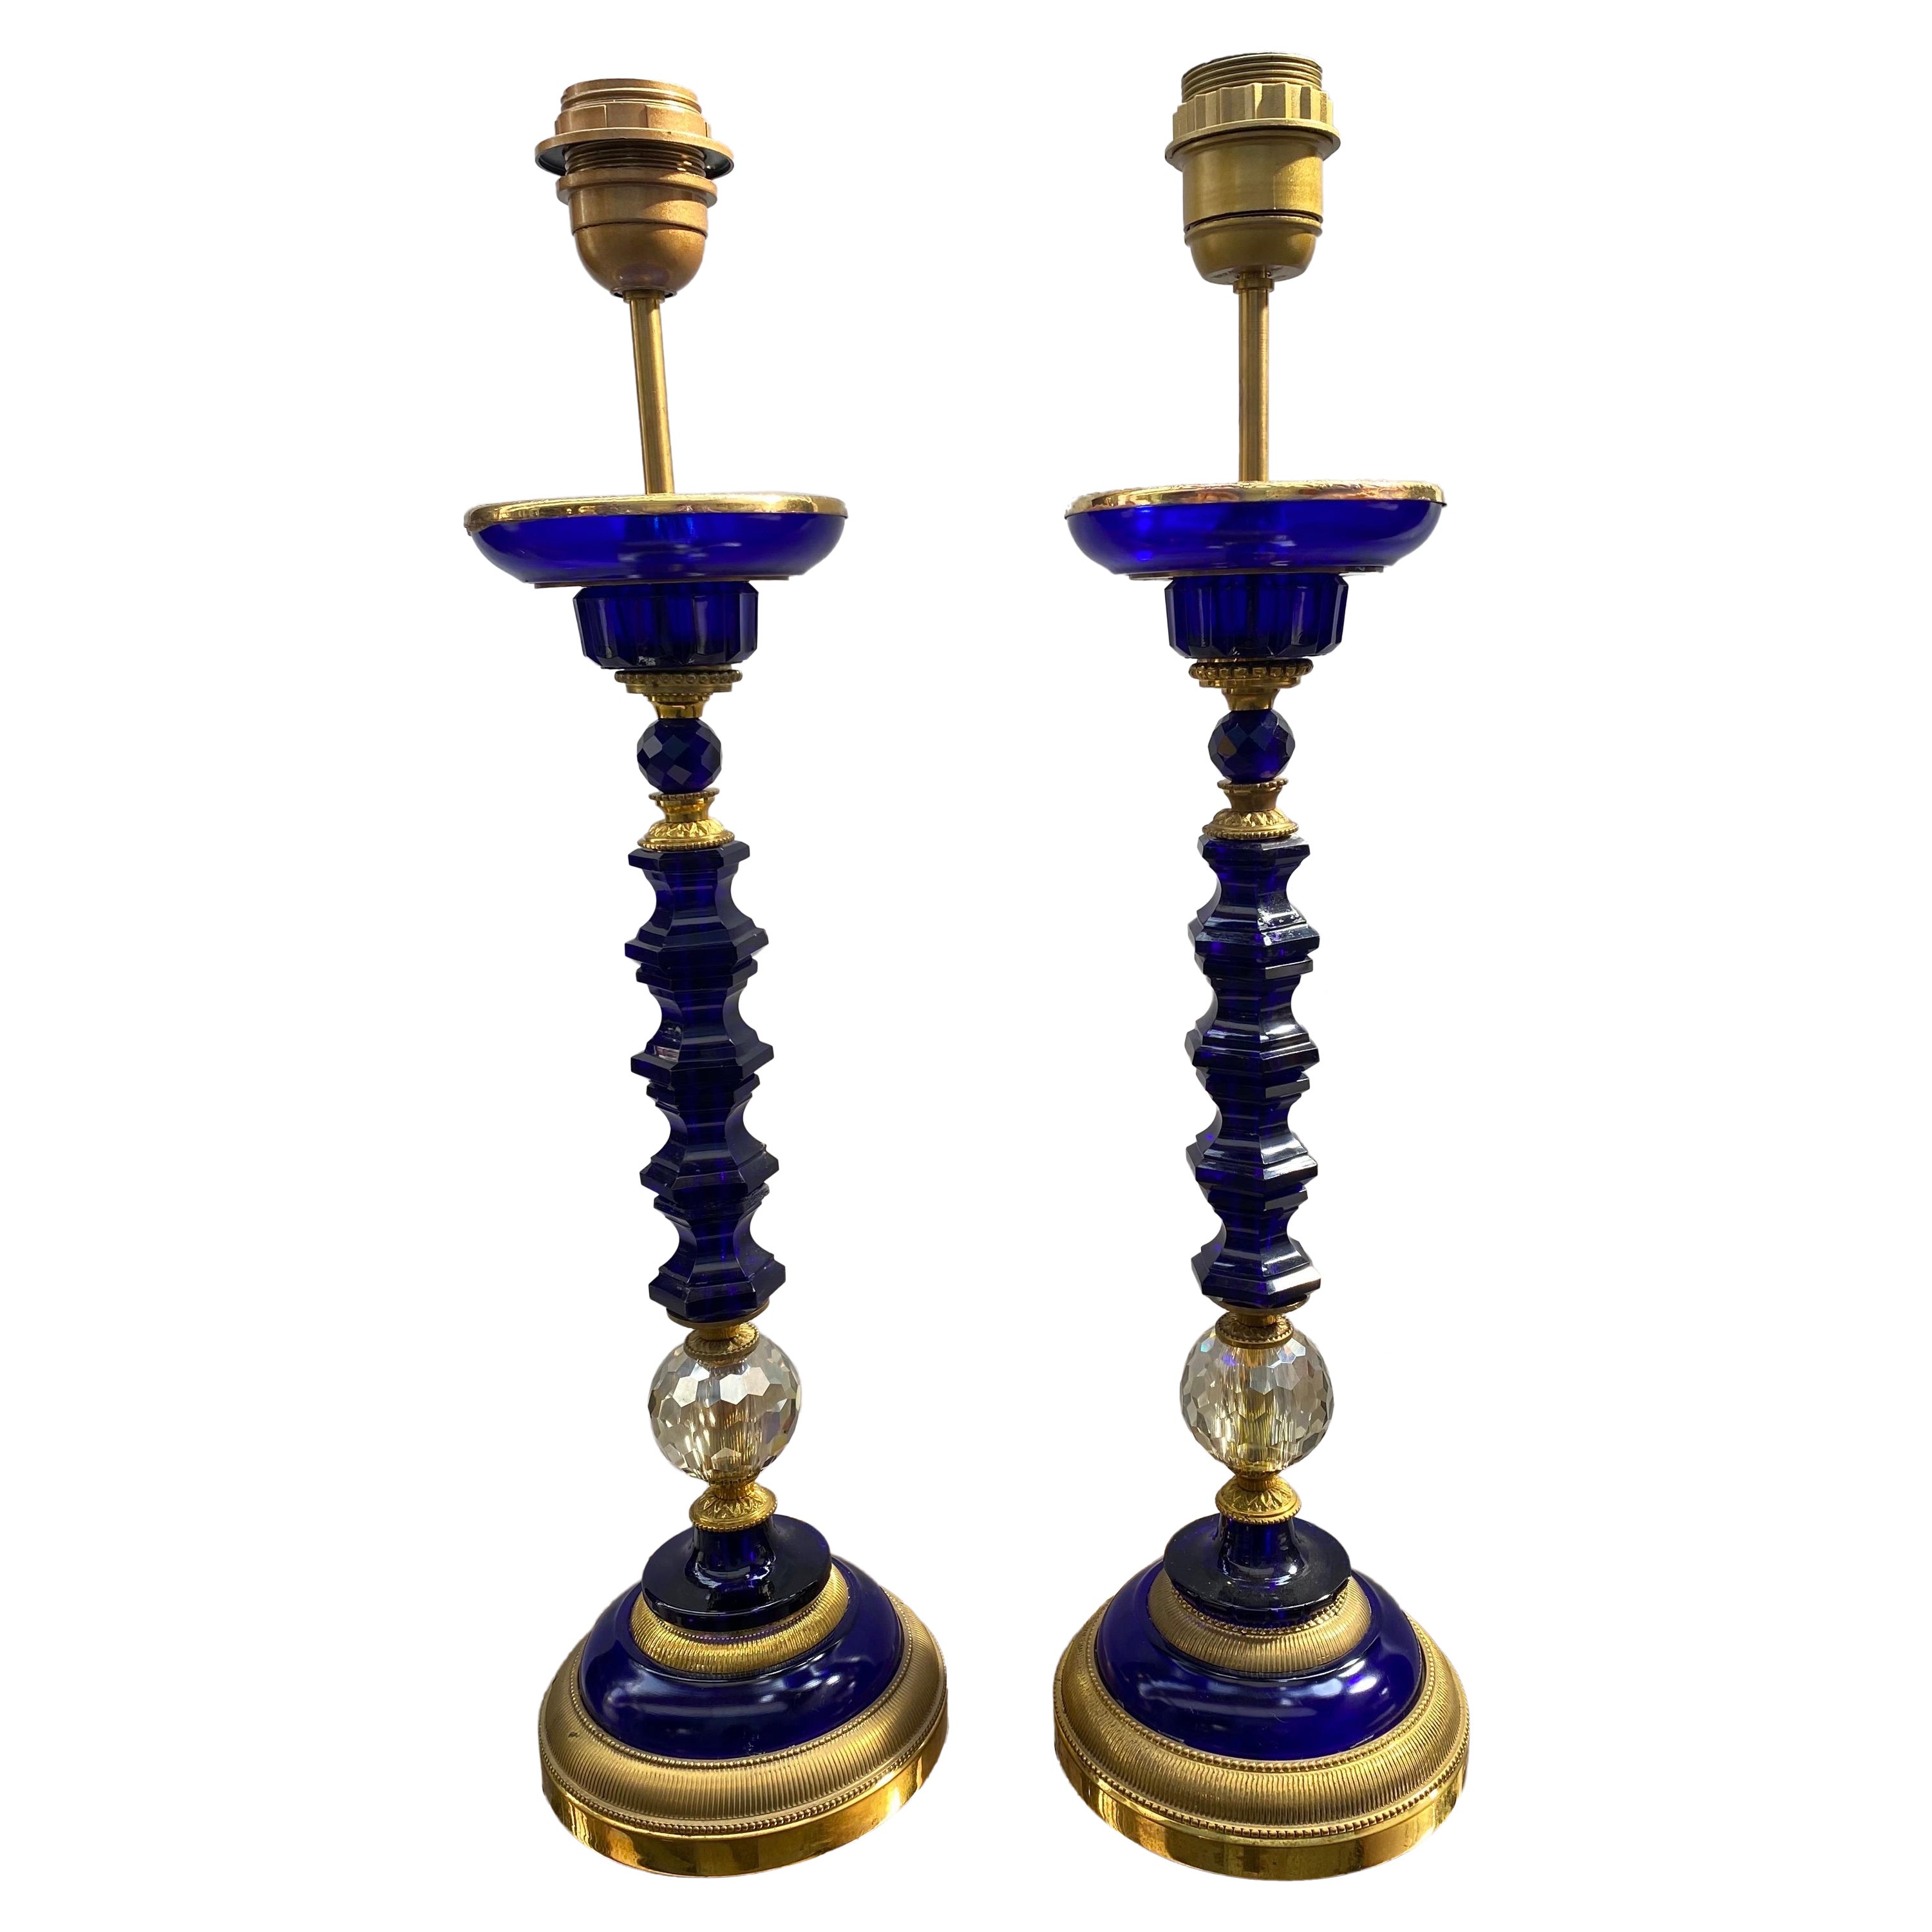 Paire de socles de lampes en cristal bleu saphir avec base en bronze doré